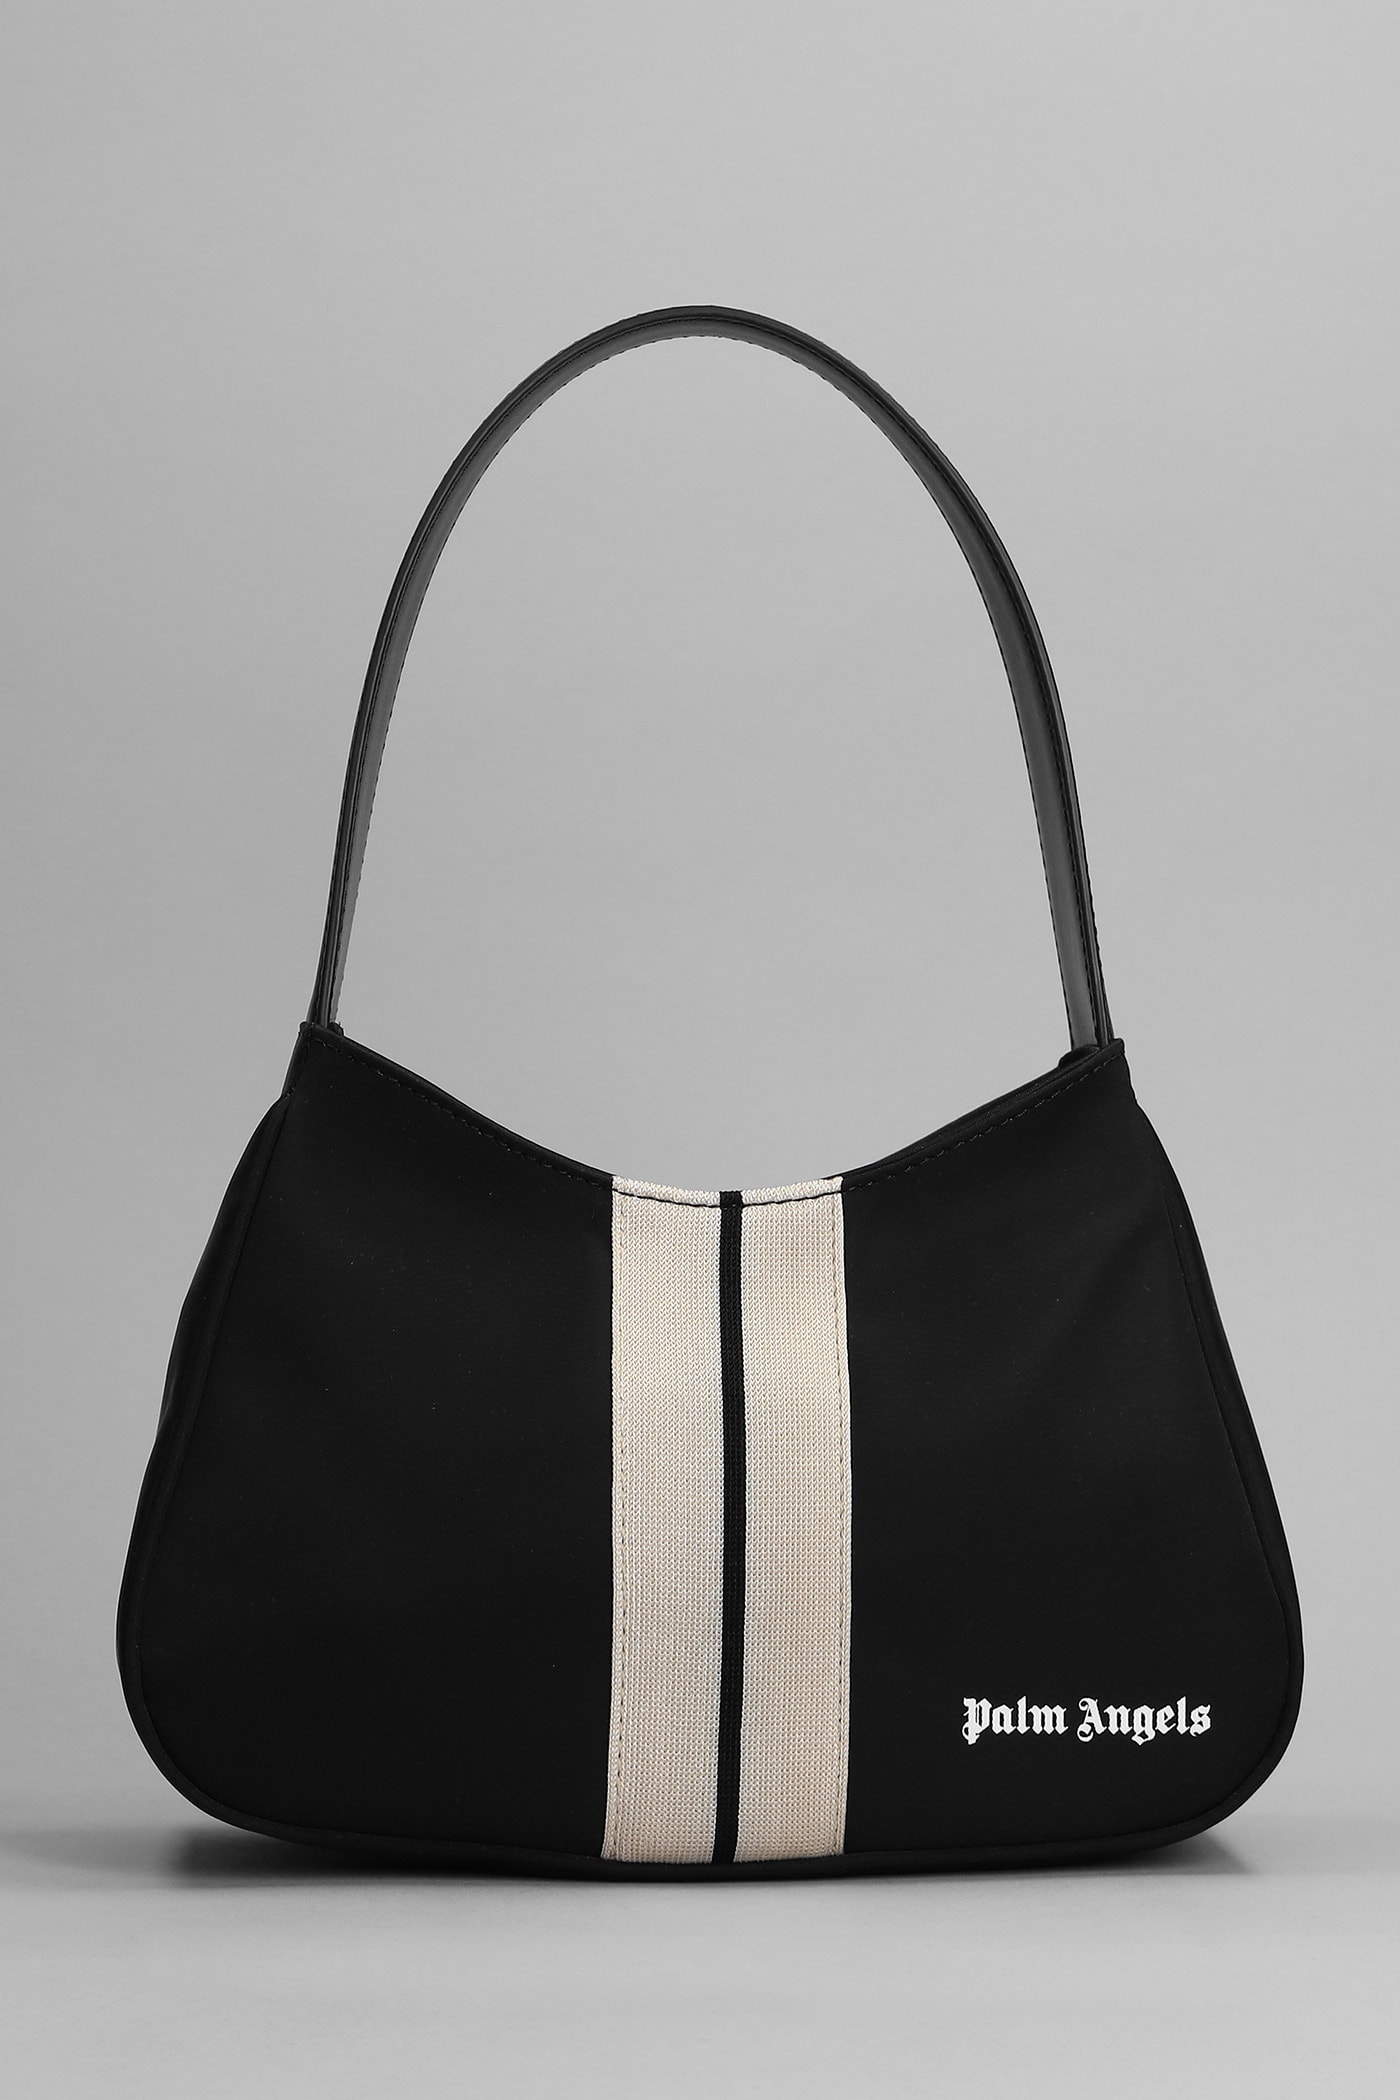 Palm Angels Shoulder Bag In Black Nylon